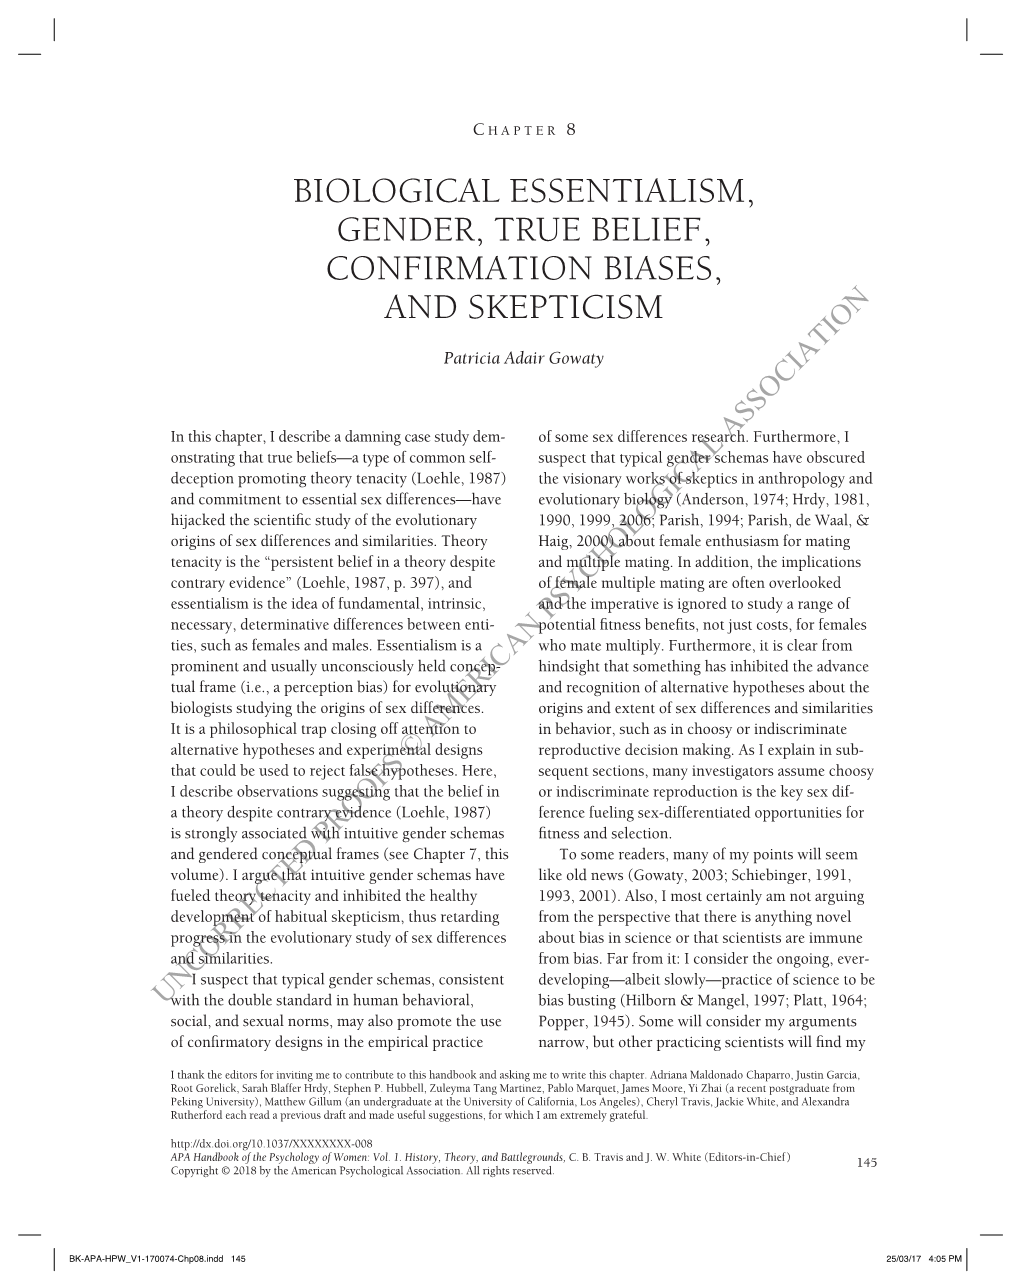 Biological Essentialism, Gender, True Belief, Confirmation Biases, and Skepticism